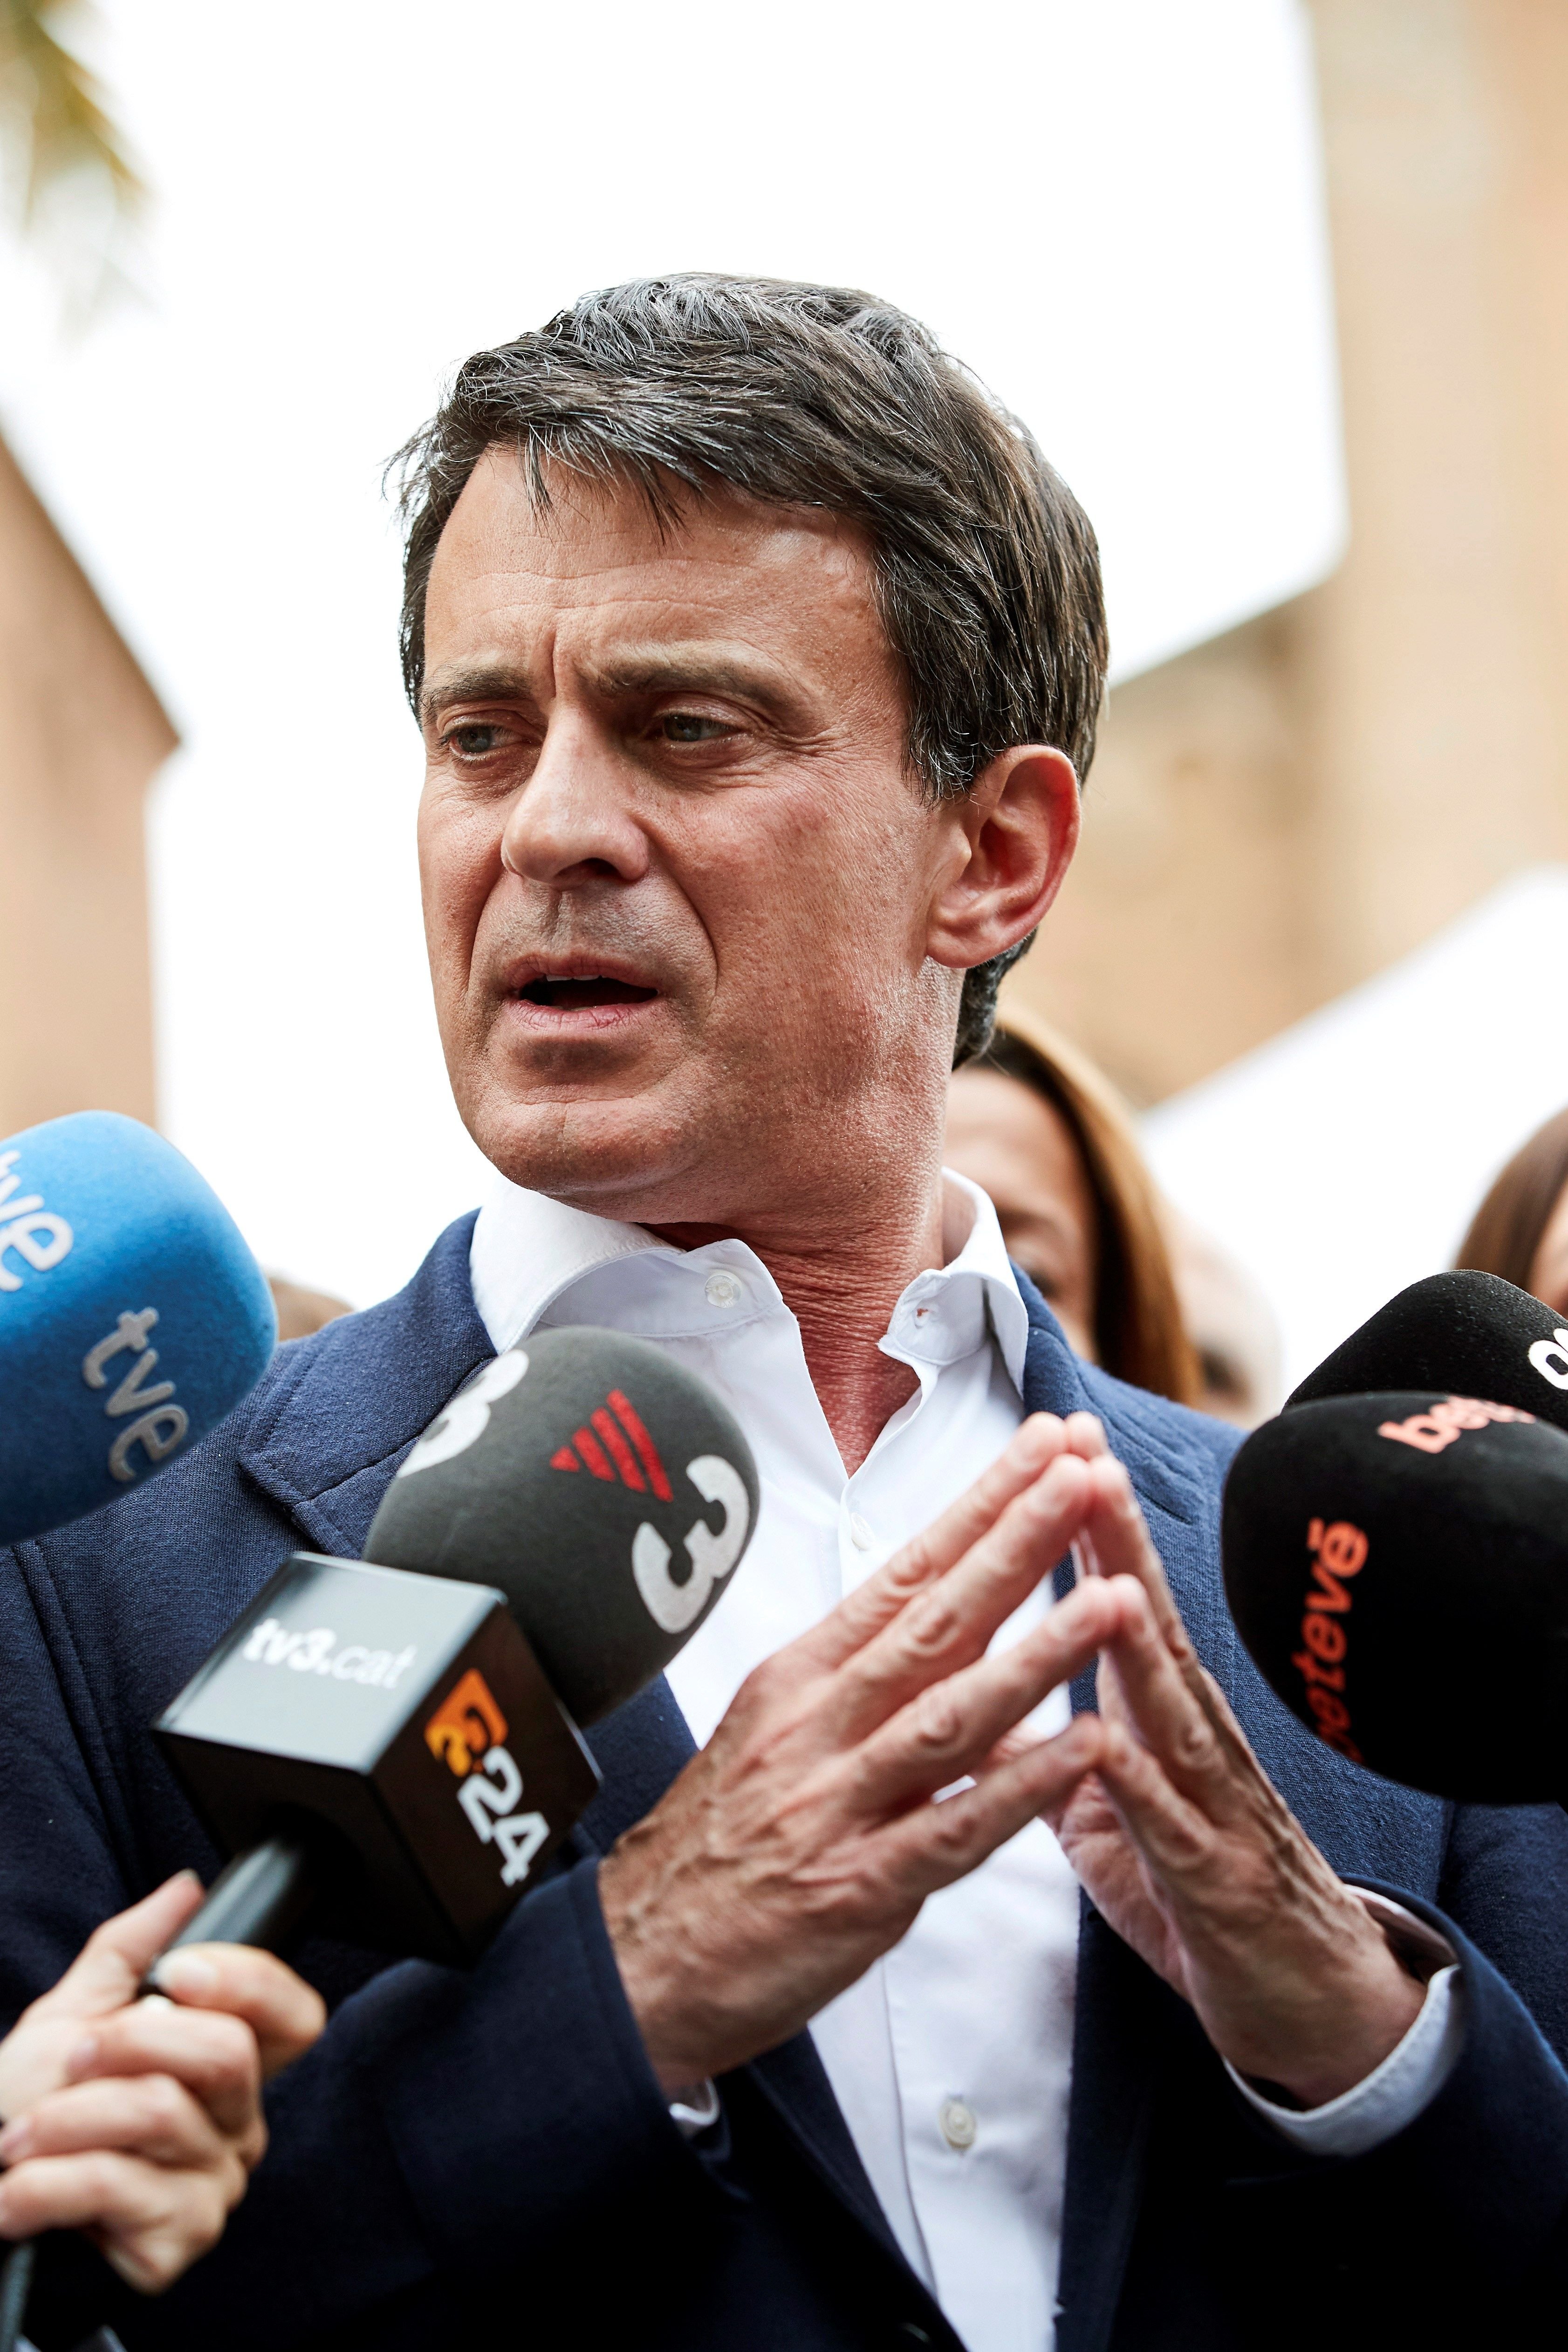 Valls posa el crit al cel per l'acostament Cs-Vox: "Tinc una gran preocupació"